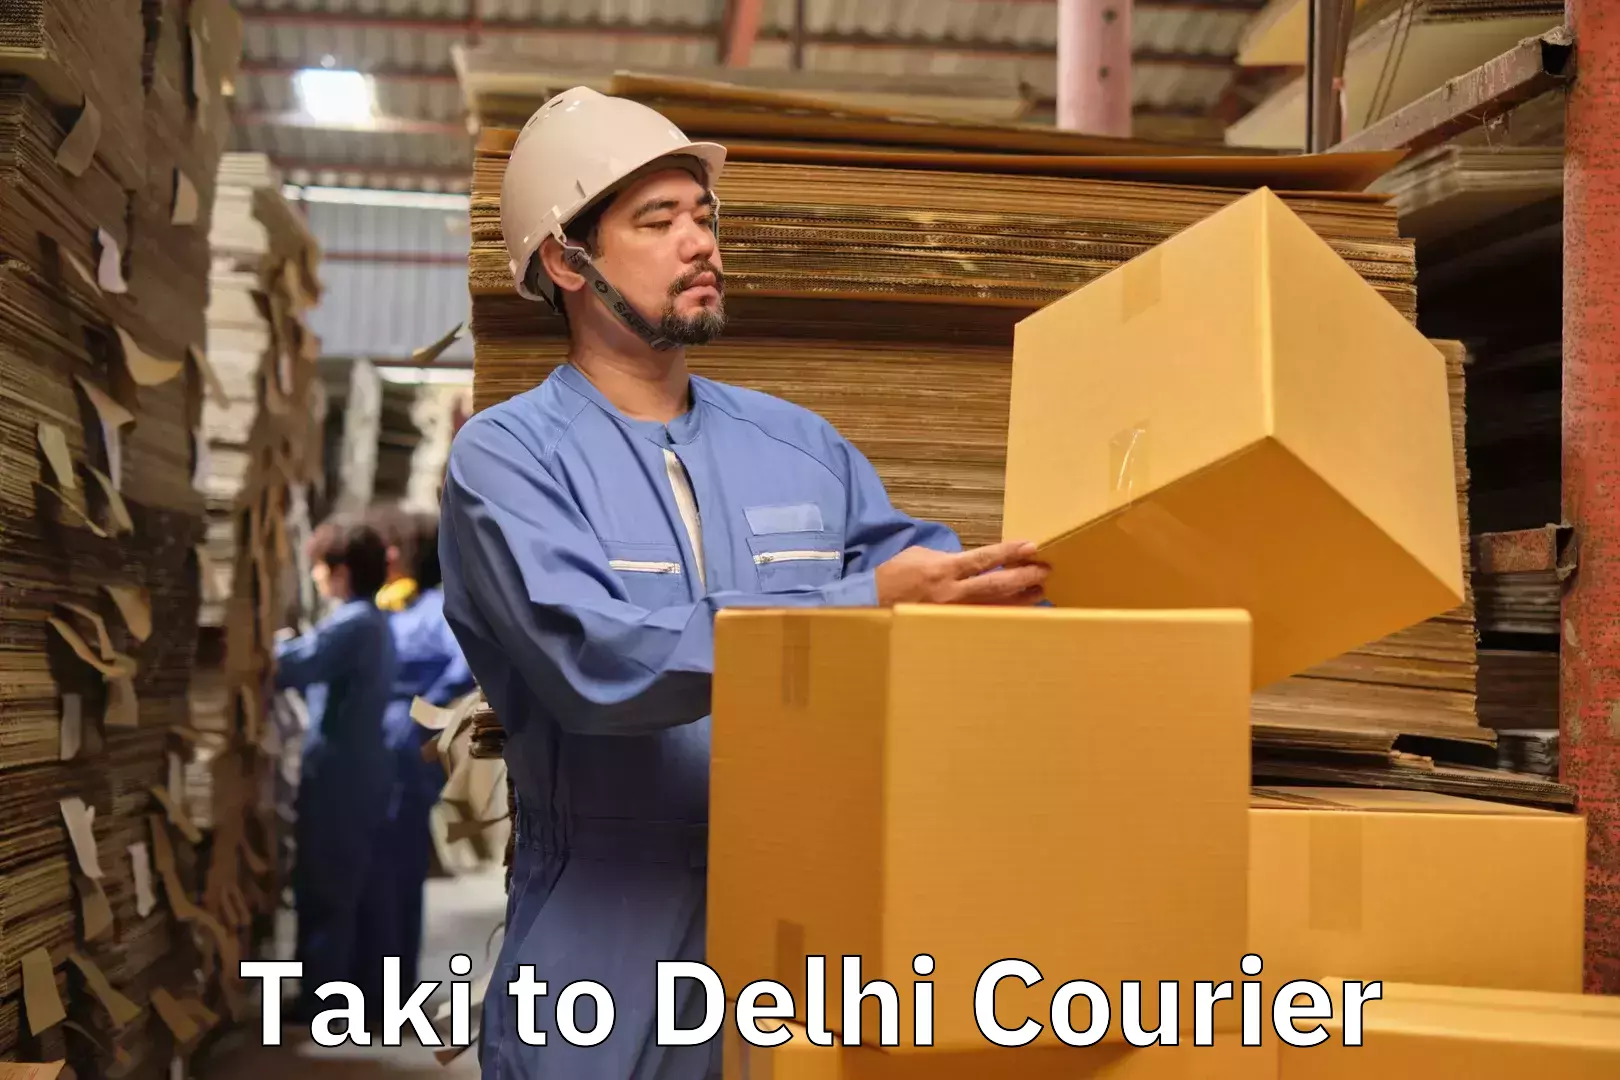 Luggage delivery providers Taki to Delhi